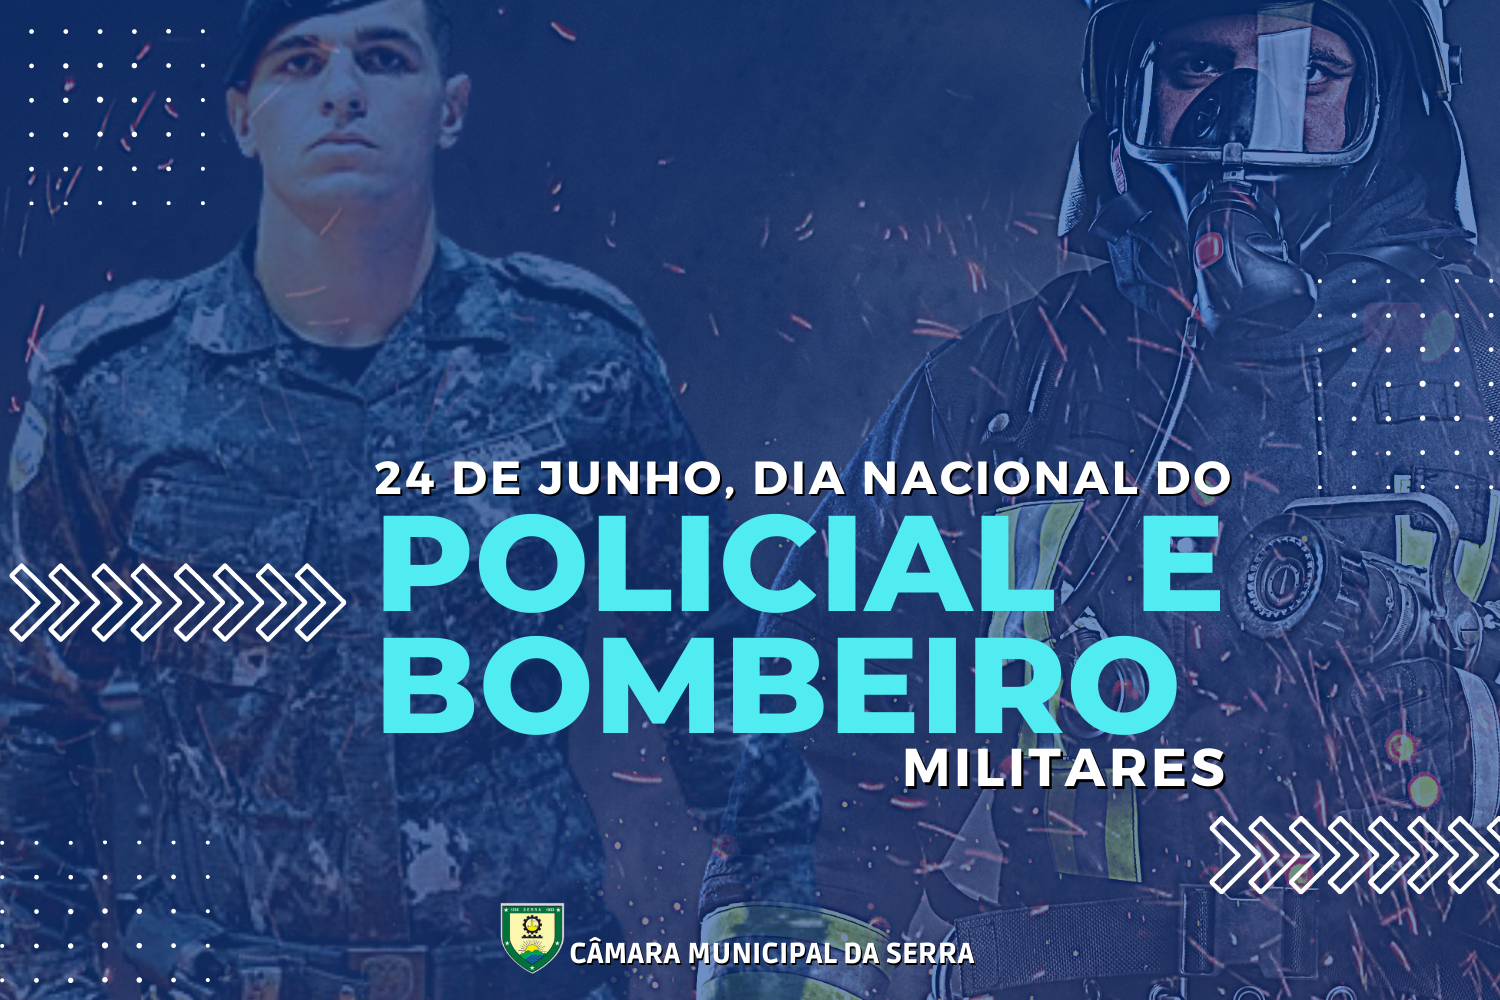 24 de Junho, dia Nacional do Policial e Bombeiro Militares.